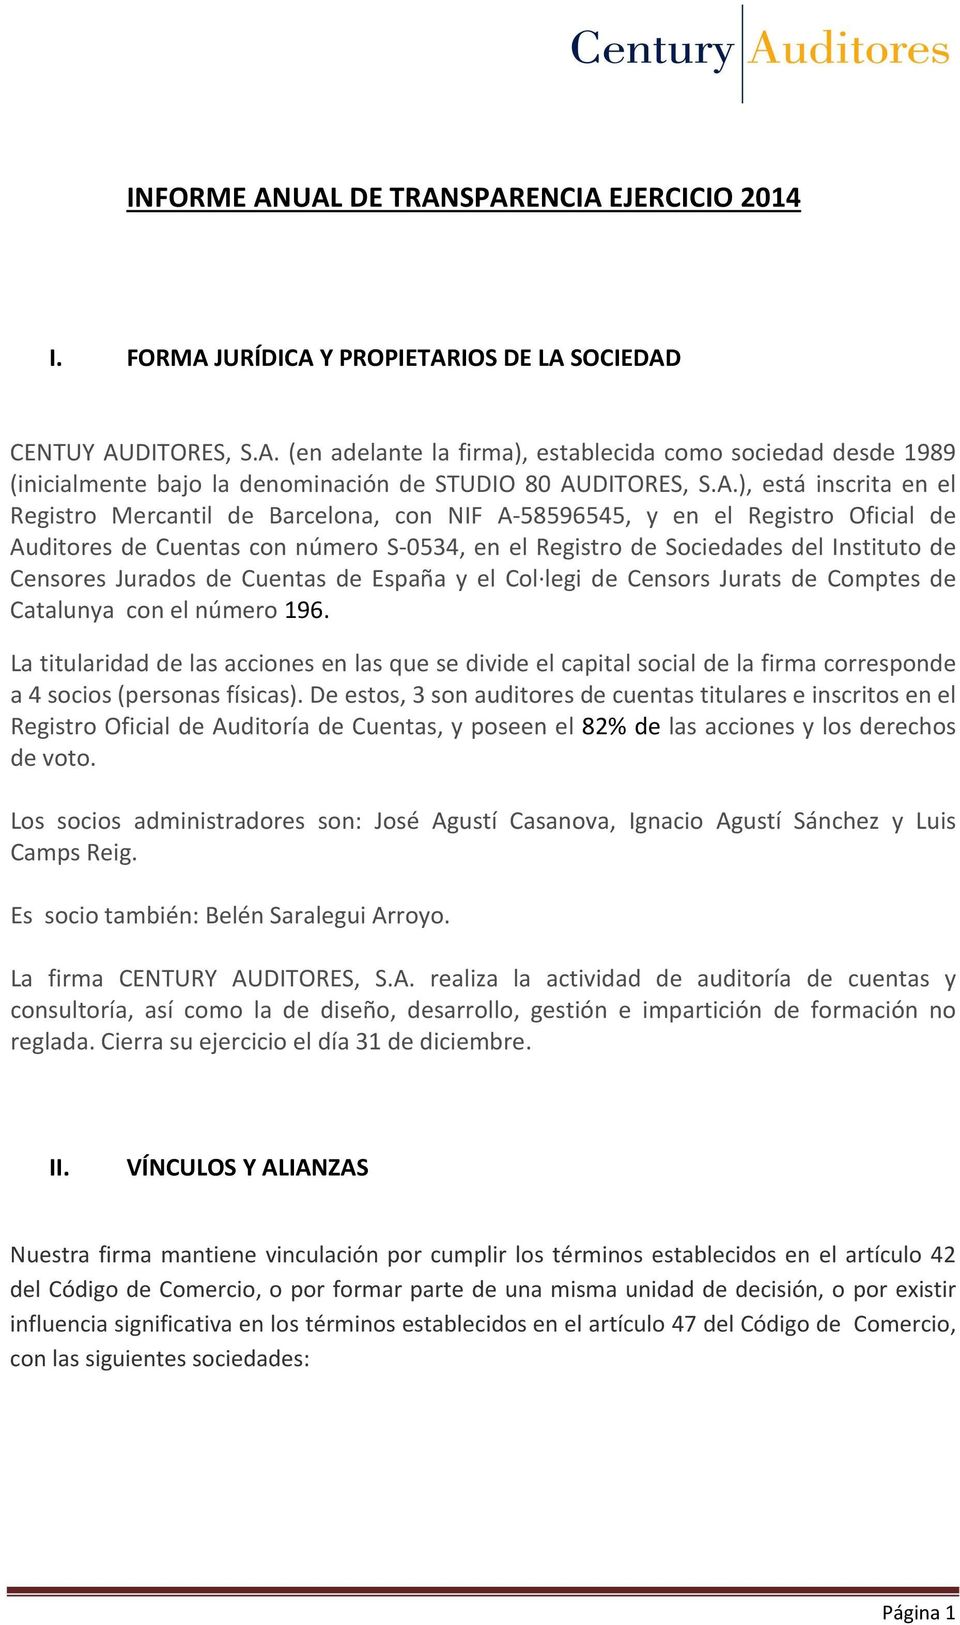 Censores Jurados de Cuentas de España y el Col legi de Censors Jurats de Comptes de Catalunya con el número 196.